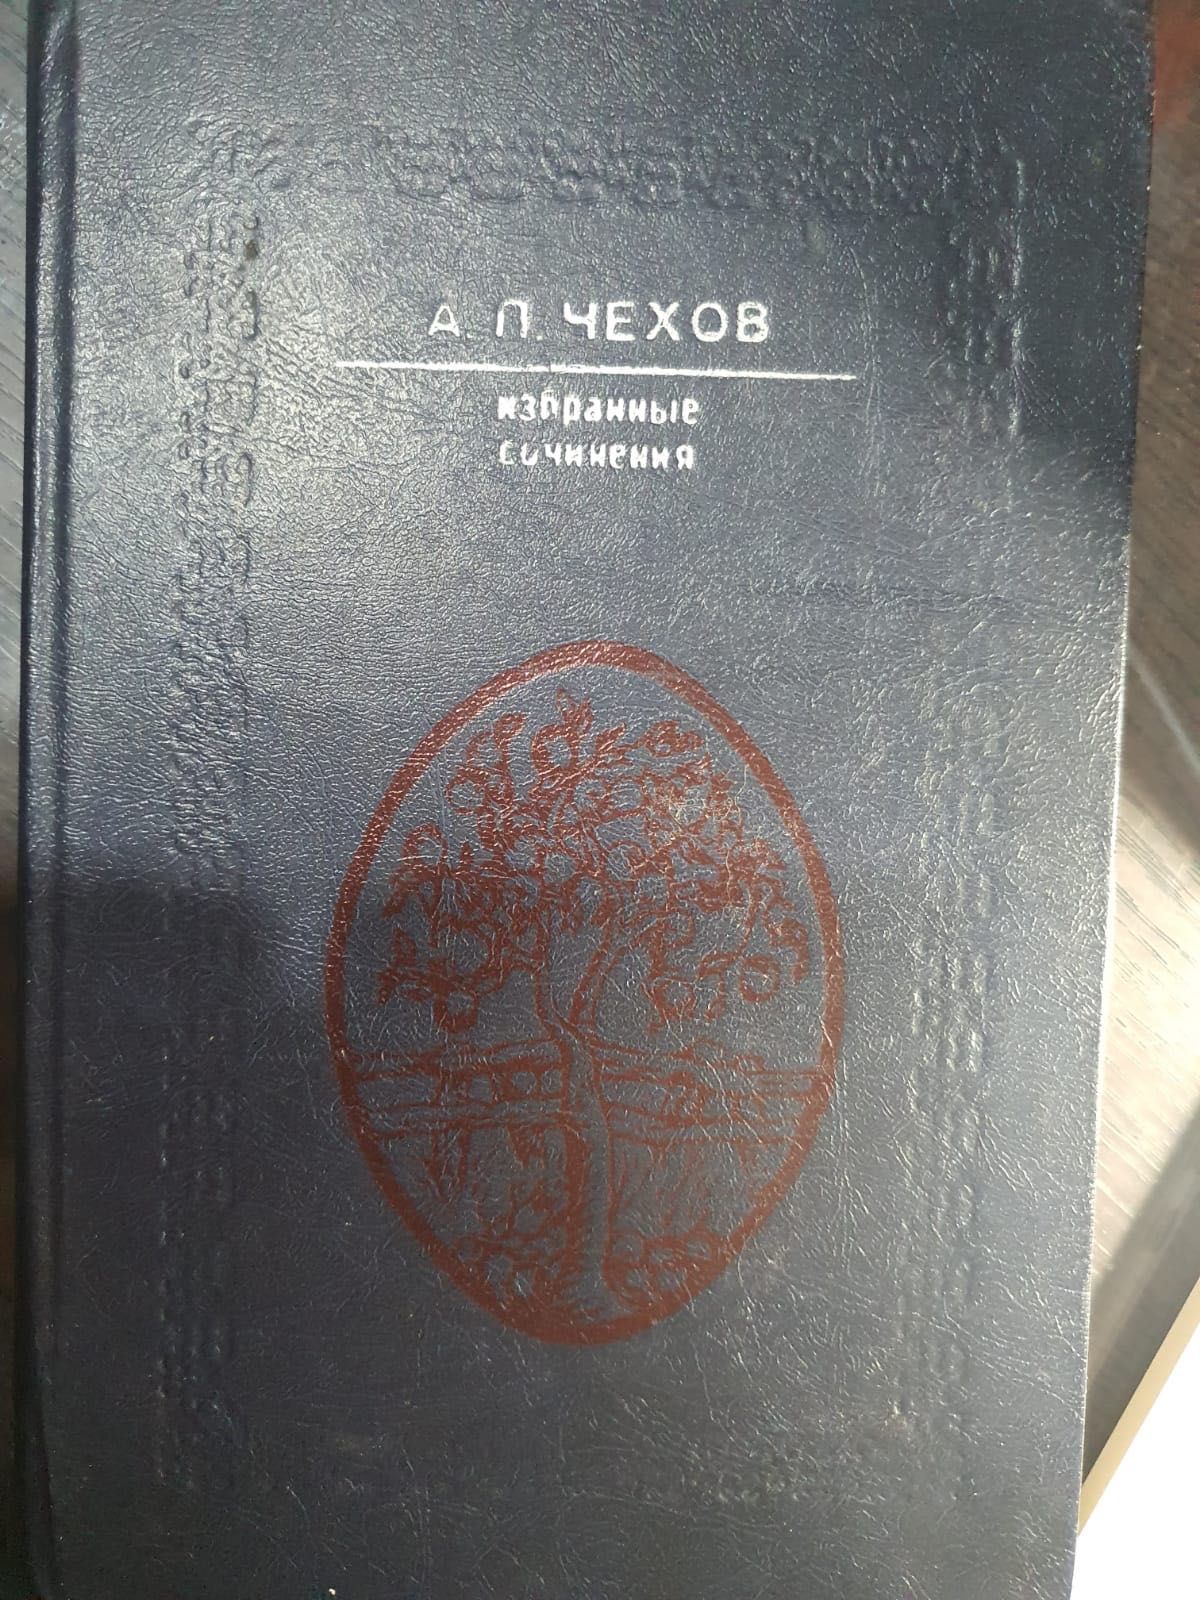 Художественная русская литература книга Чехов Избранные сочинения